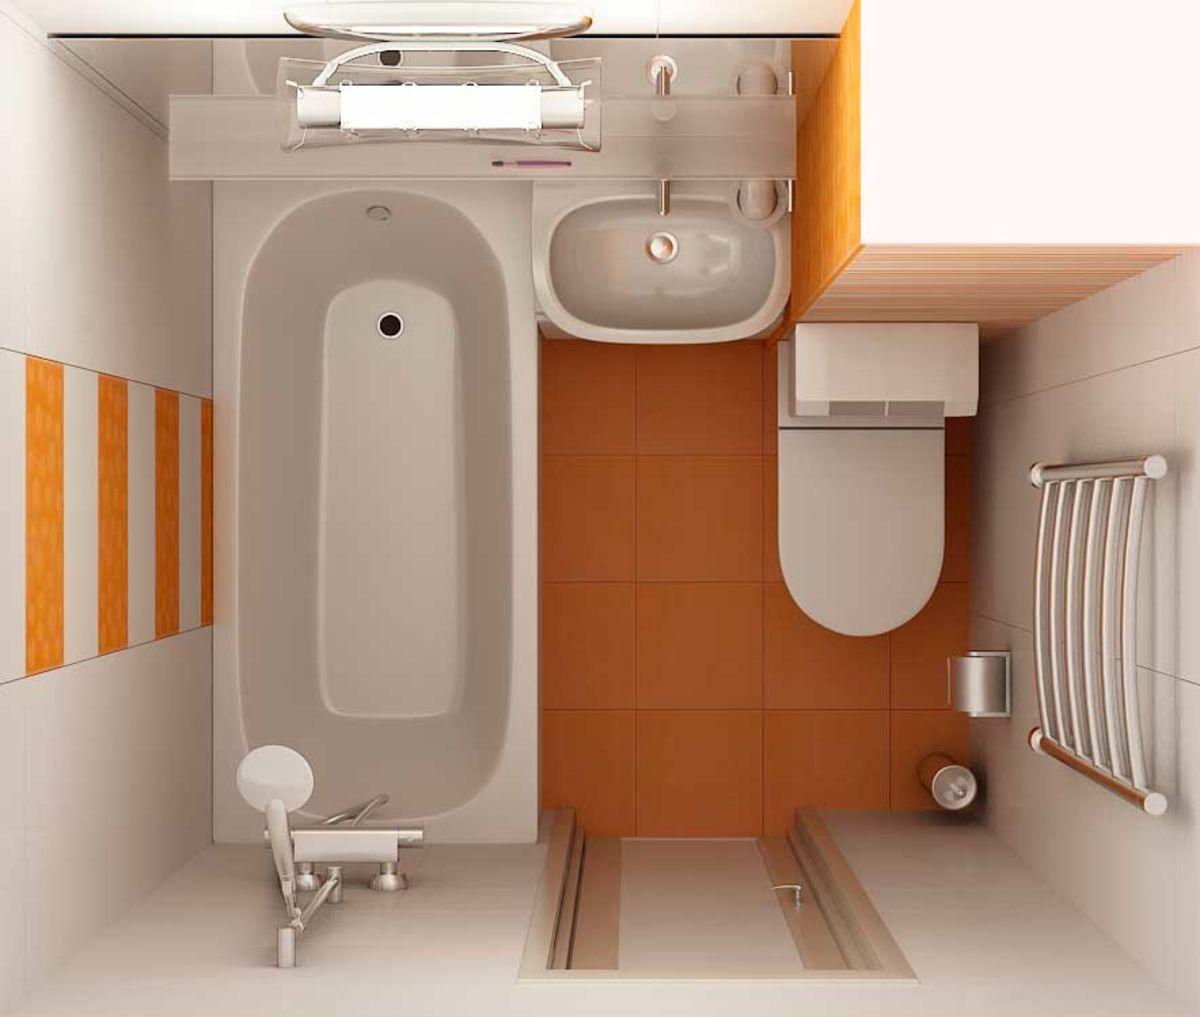 Планировка ванной комнаты и туалета с размещением сантехники (21 вариант с размерами)